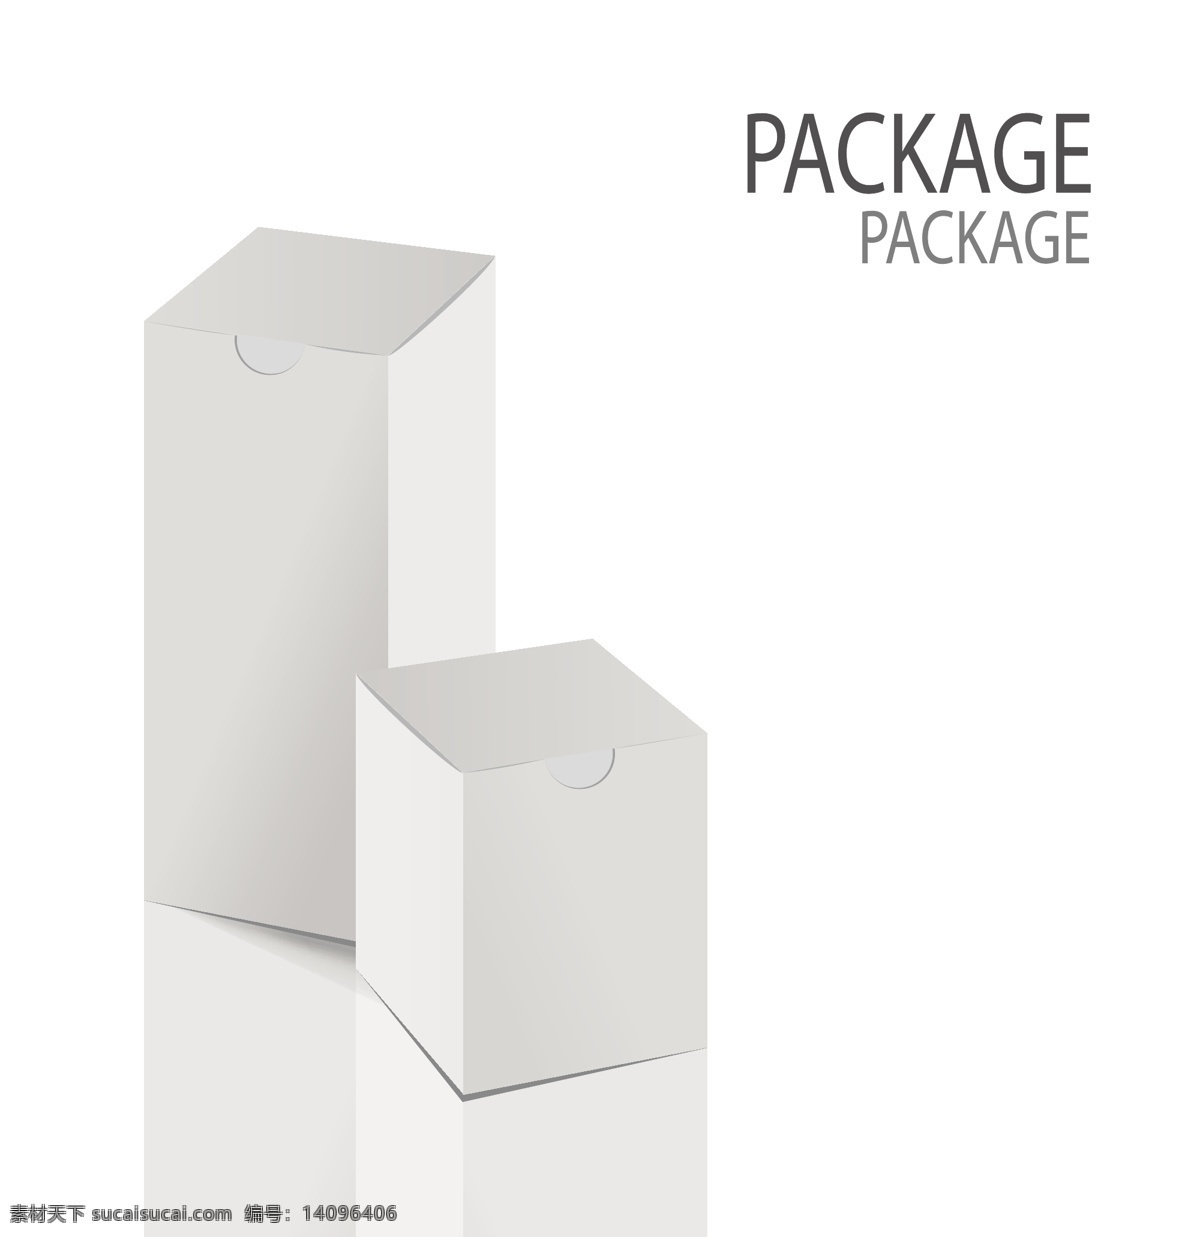 各式 样式 包装盒 设计素材 商家 设计元素 高清 源文件 厂家 广告装饰图案